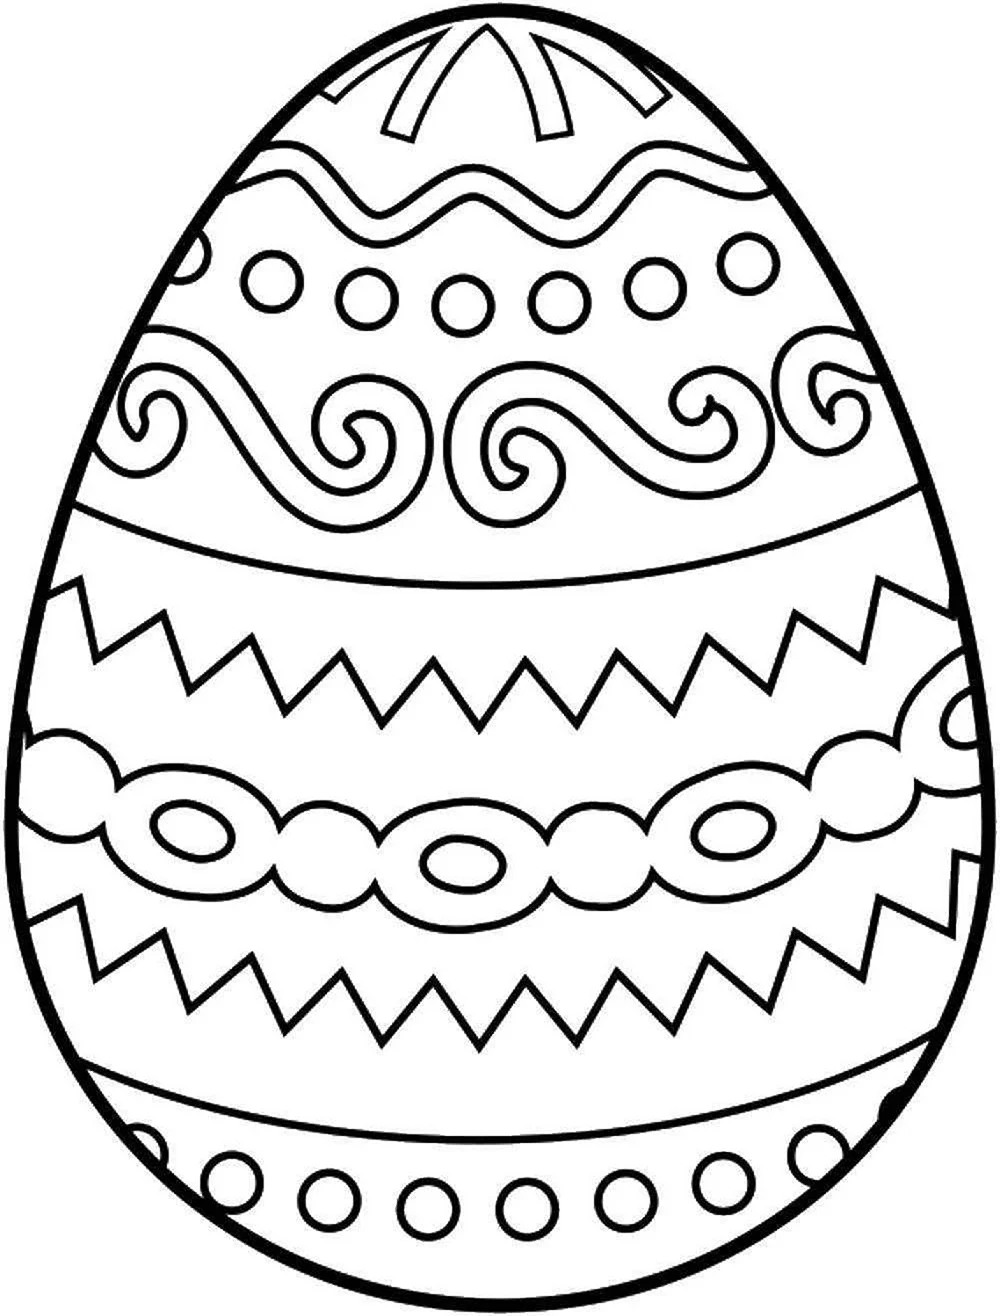 Пасхальное яйцо раскраска для детей. Для срисовки